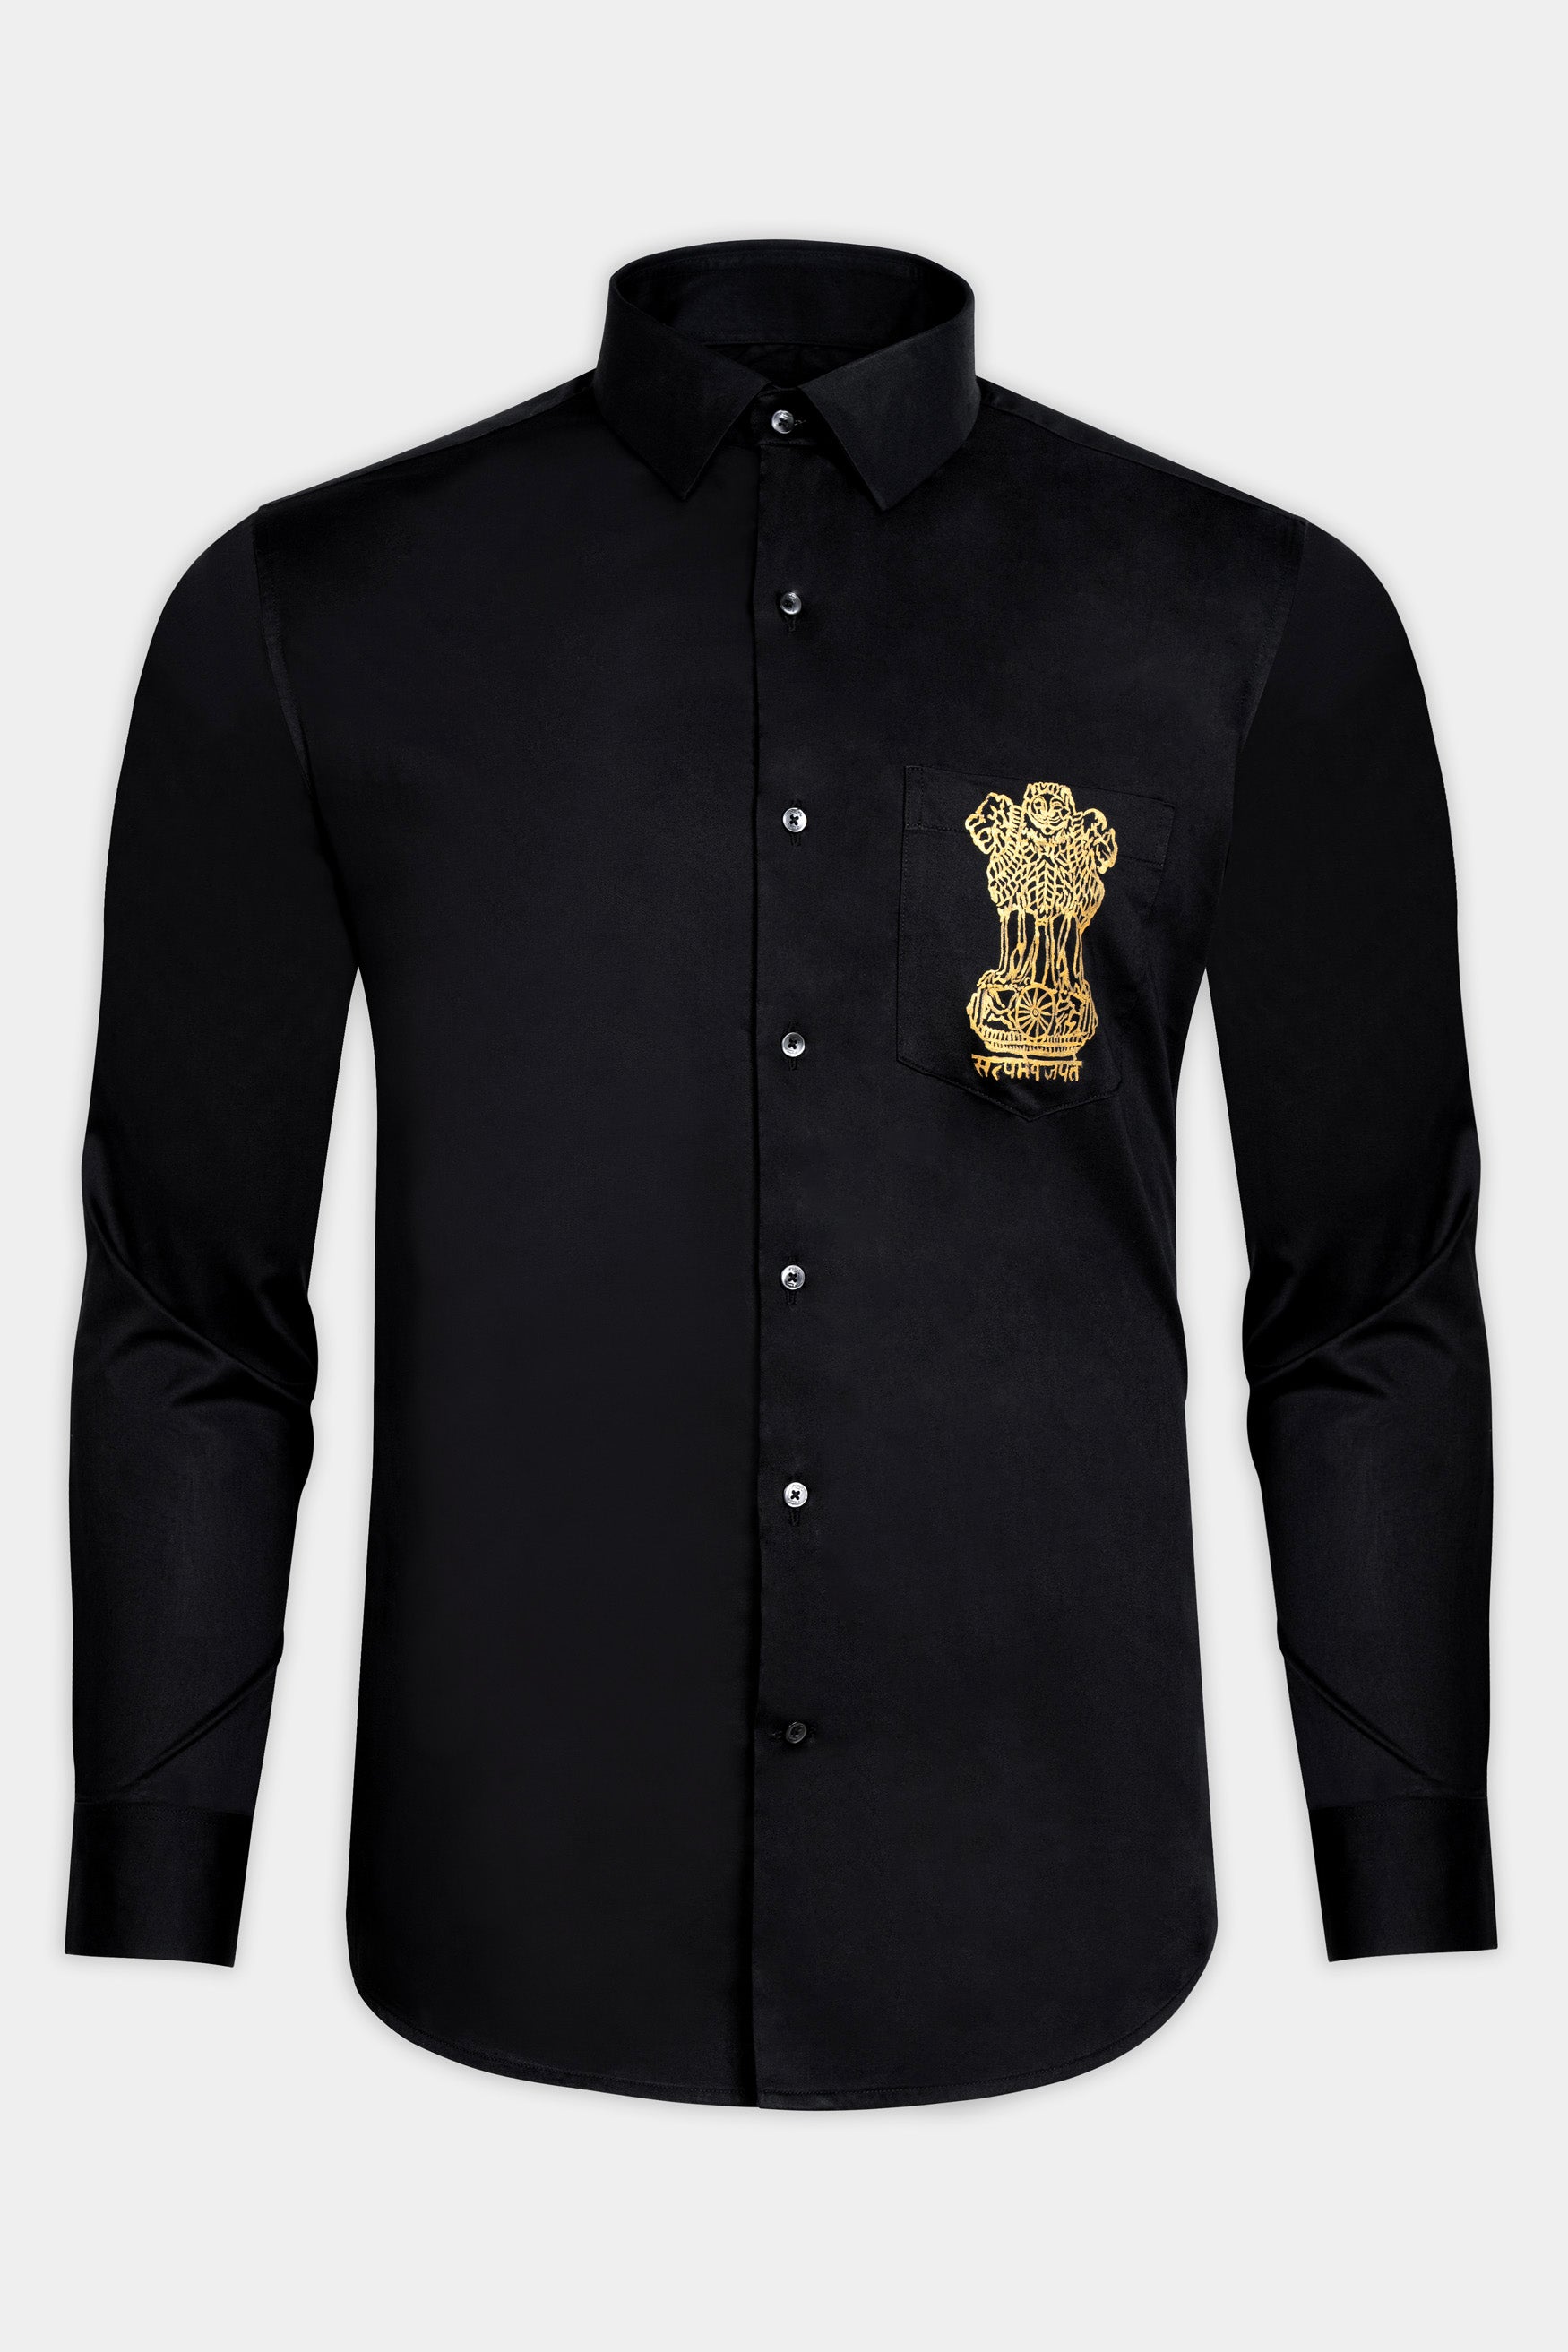 Jade Black Indian National Emblem Hand Painted Subtle Sheen Super Soft Premium Cotton Designer Shirt